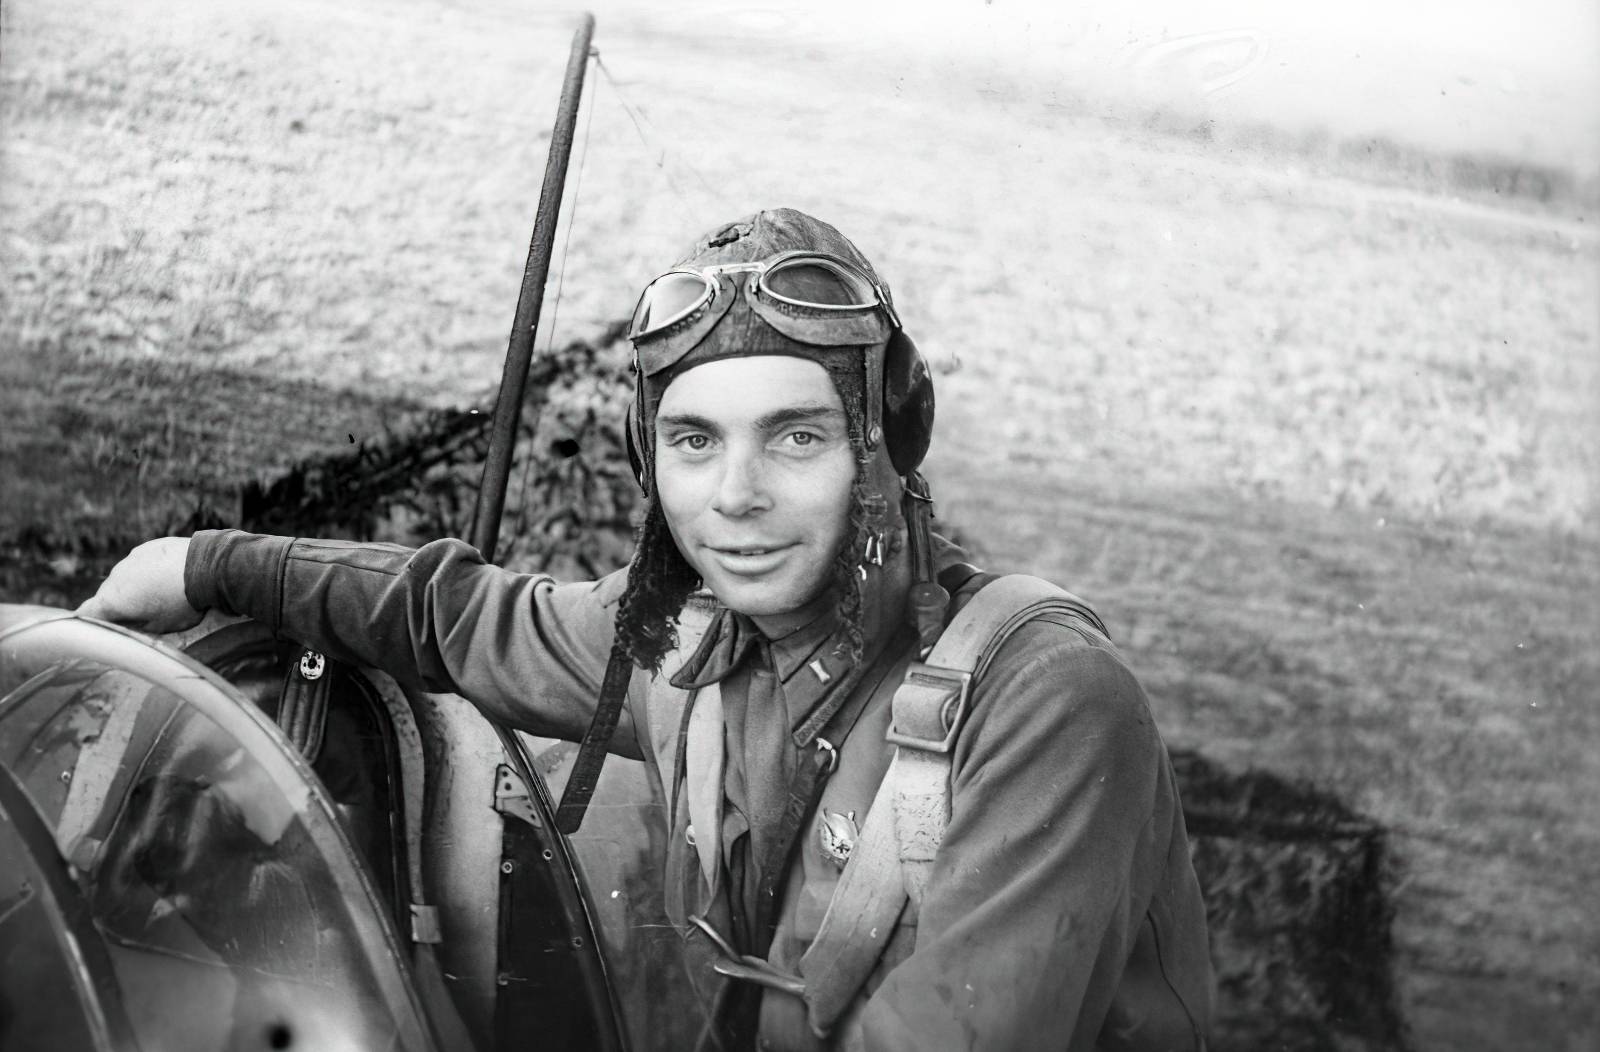 Командир эскадрильи 864-го истребительного авиаполка Сталинградского фронта капитан Дмитрий Хохлов. Июль 1942 года